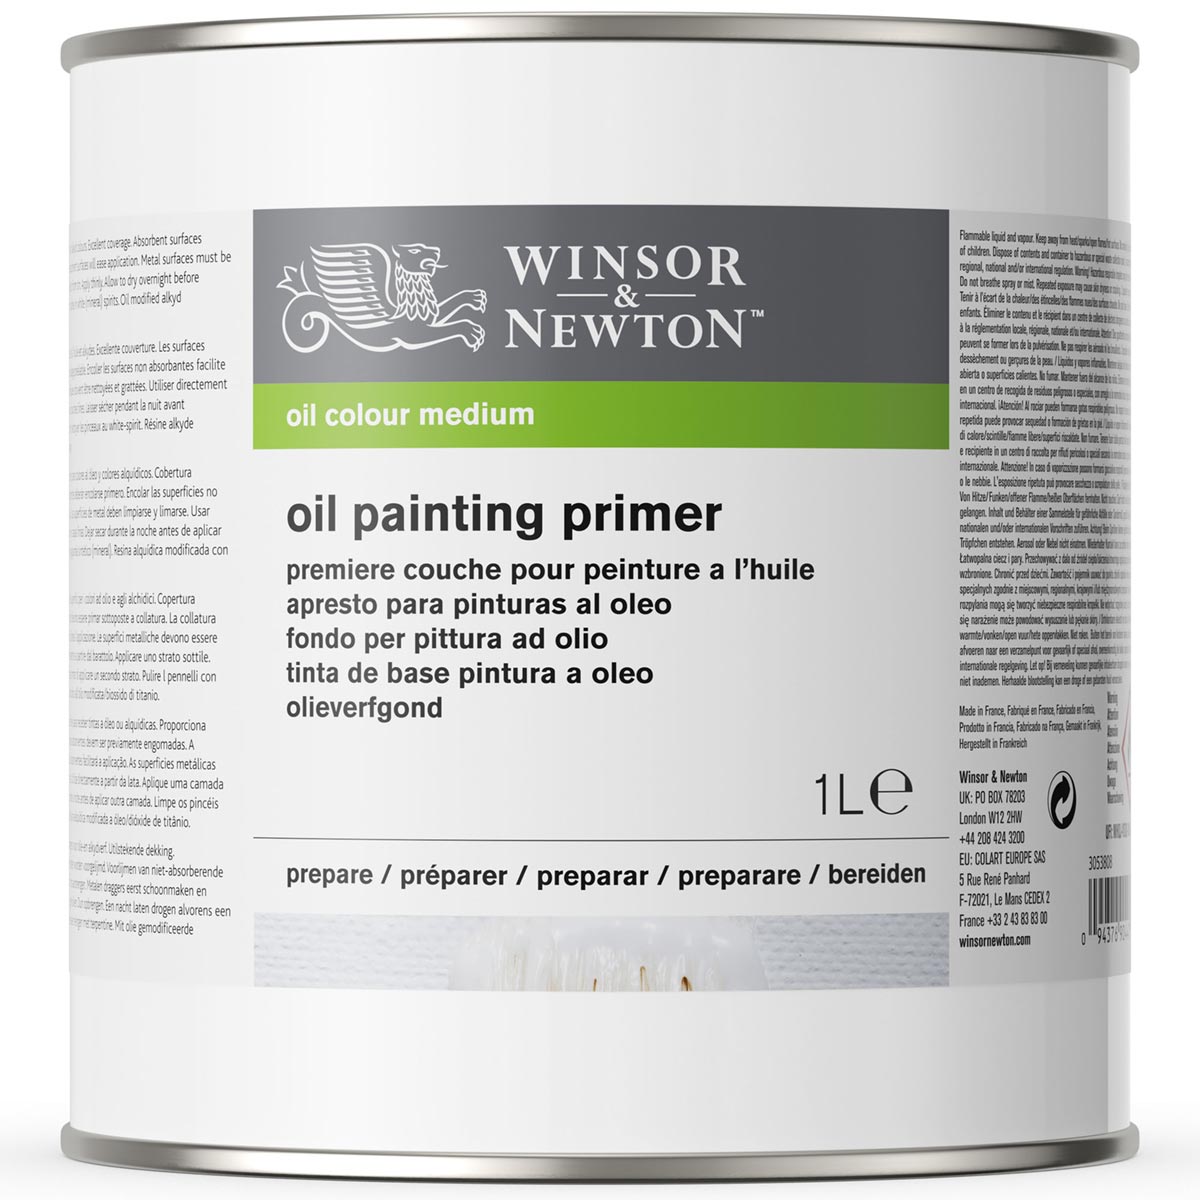 Winsor et Newton - Primer de peinture à l'huile - 1 litre